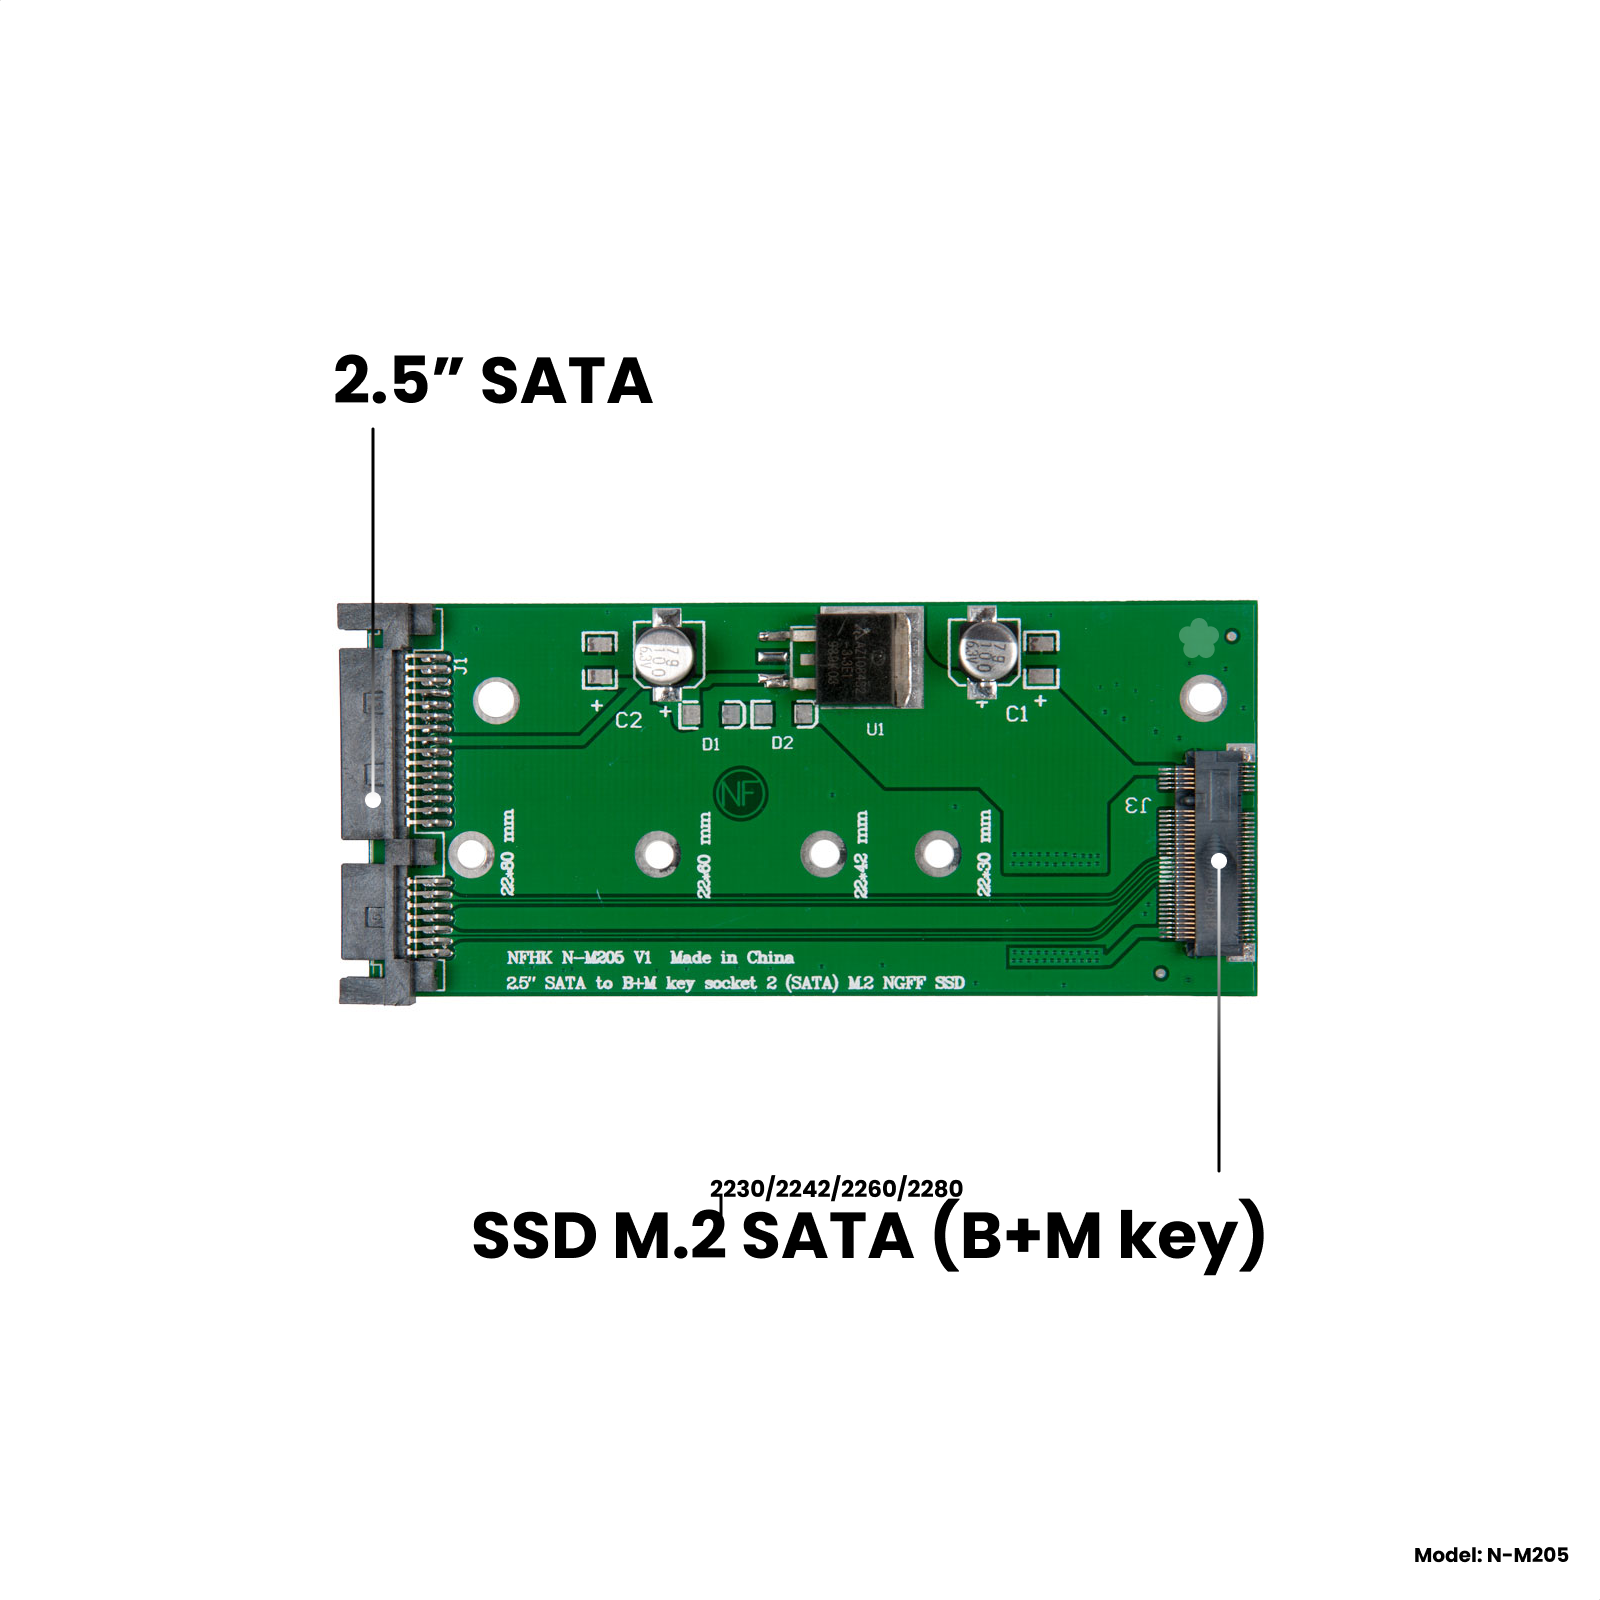 Адаптер-переходник для установки SSD M.2 SATA (B+M key) в разъем 2.5" SATA, NFHK N-M205